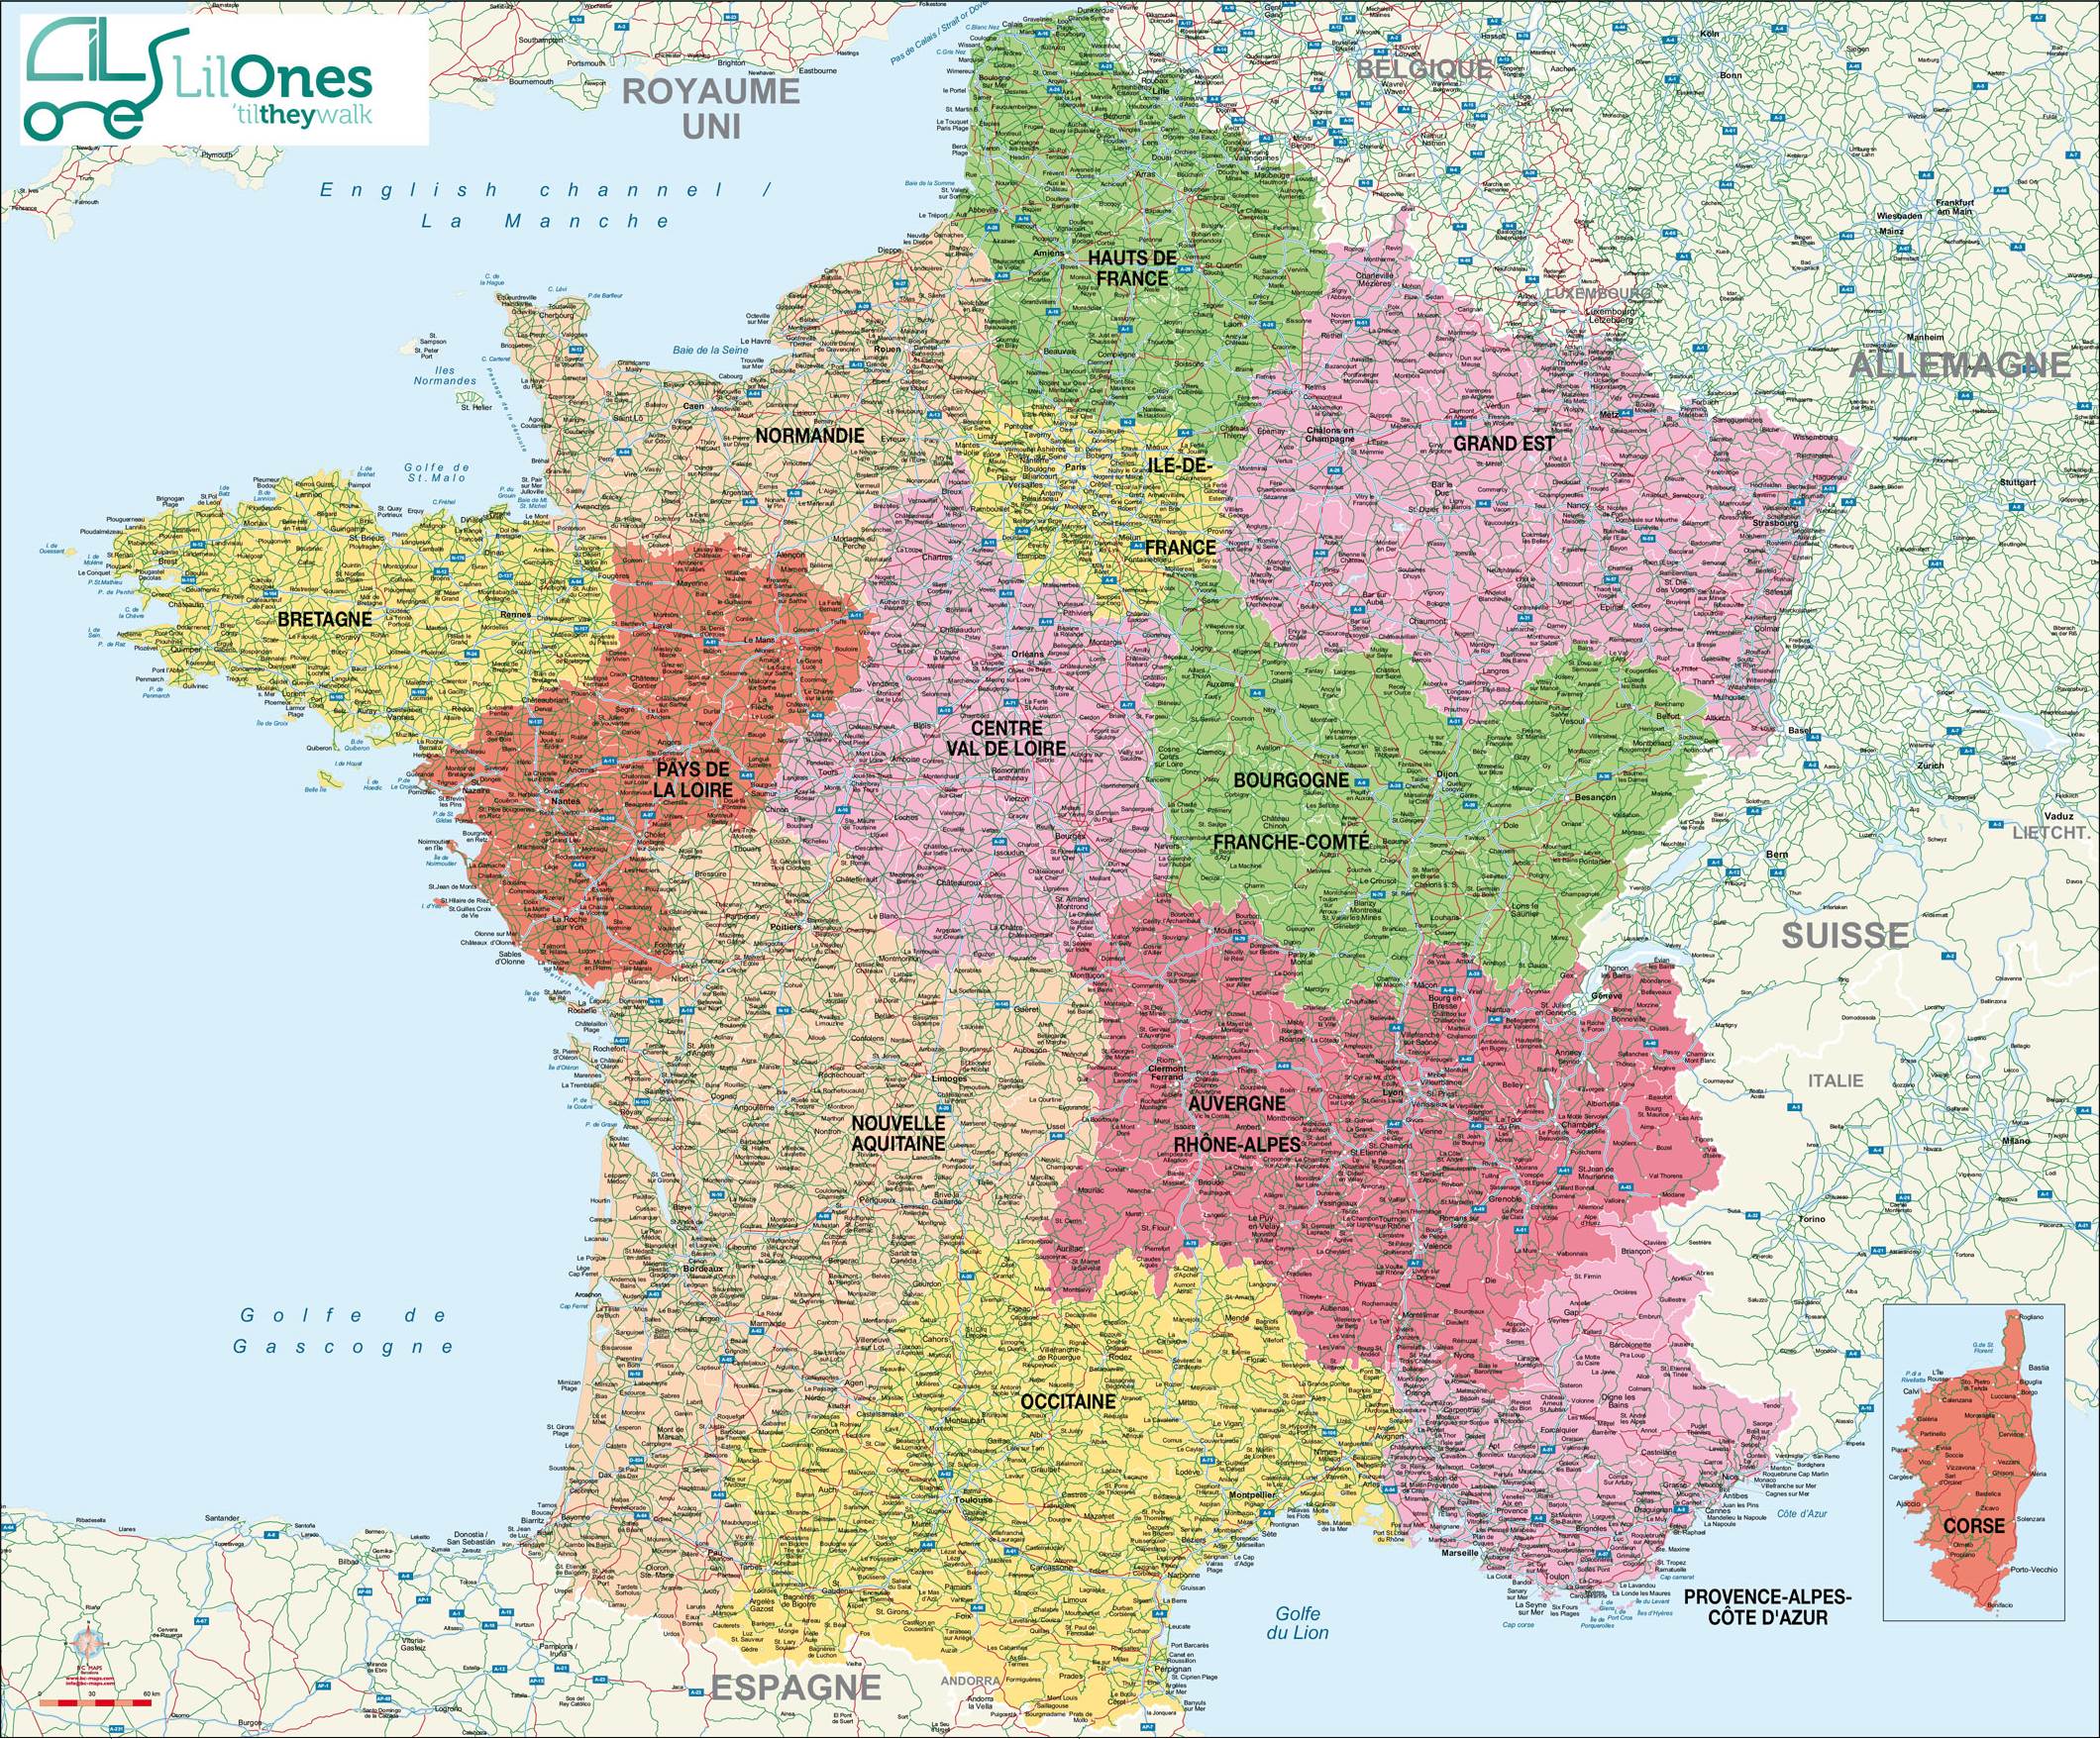 CARTE FRANCE VILLES : carte des villes de France